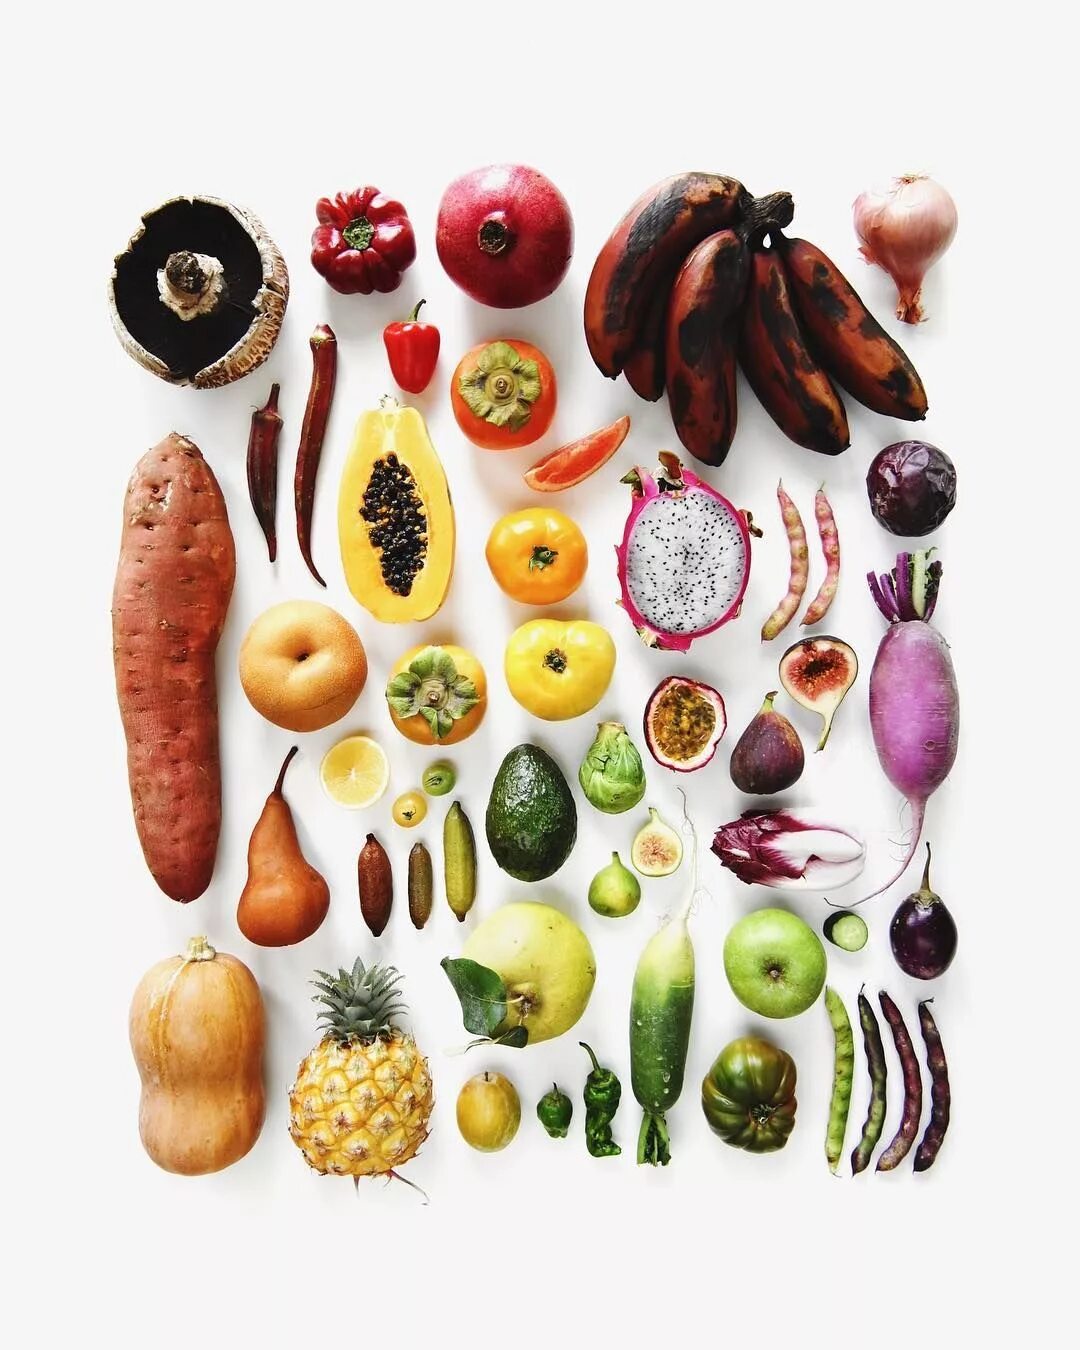 Растительная пища. Еда растительная арт. Растительное питание. Энзимы из овощей и фруктов. Variety is the of life